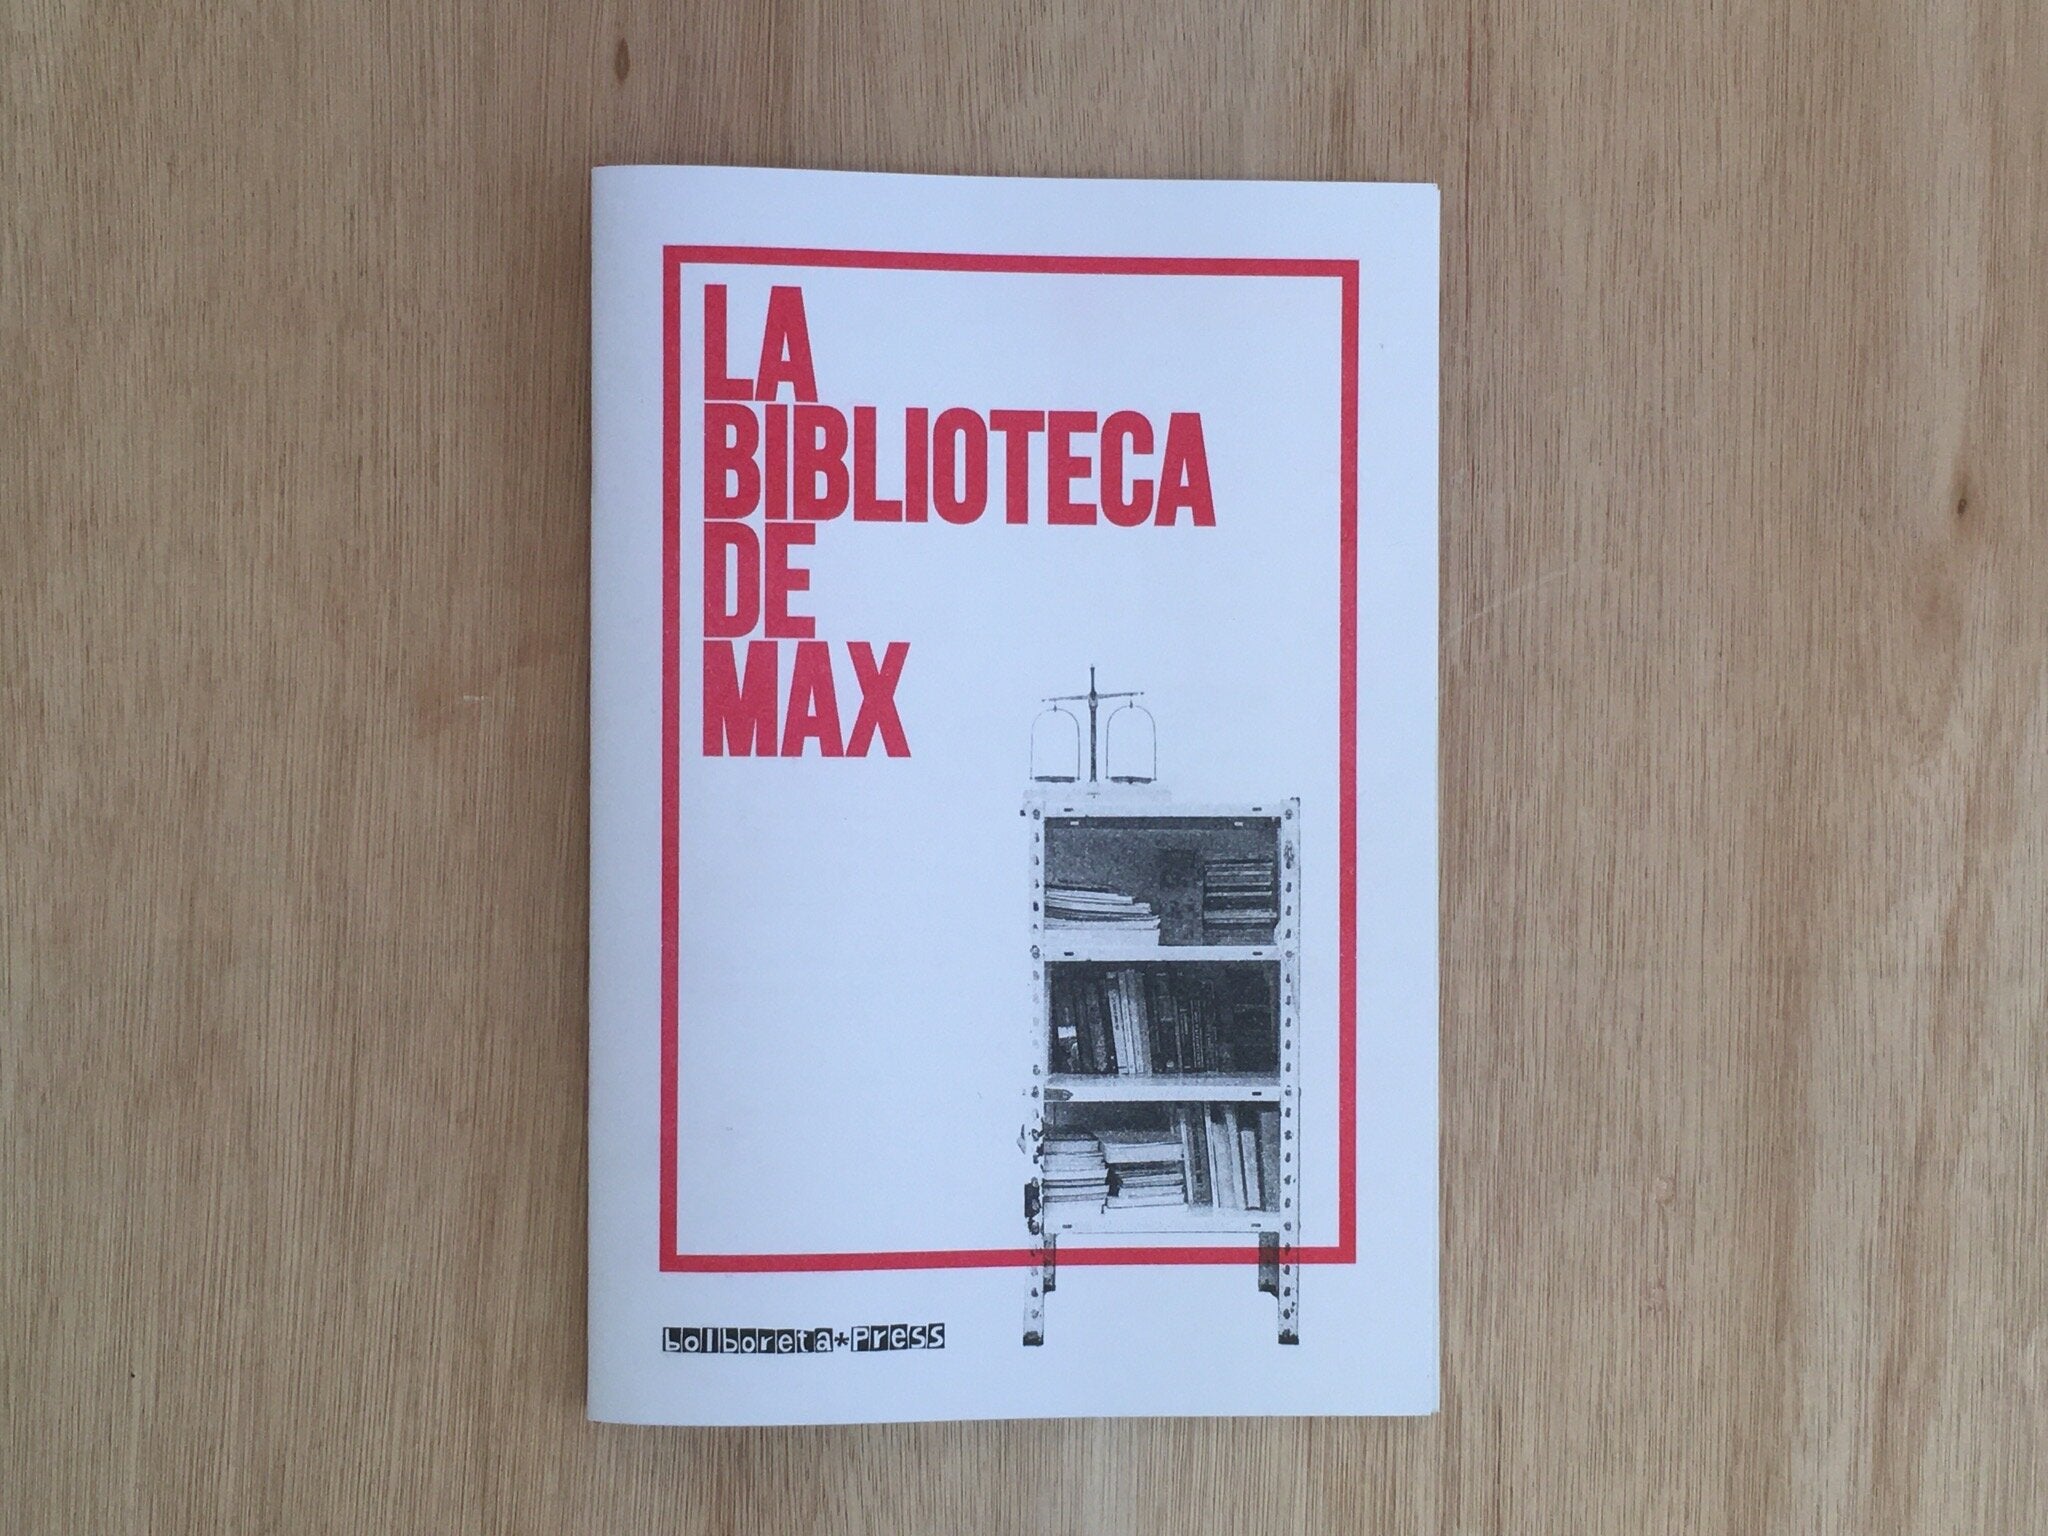 LA BIBLIOTECA DE MAX by Rosa Serrano and Guillermo Mendoza